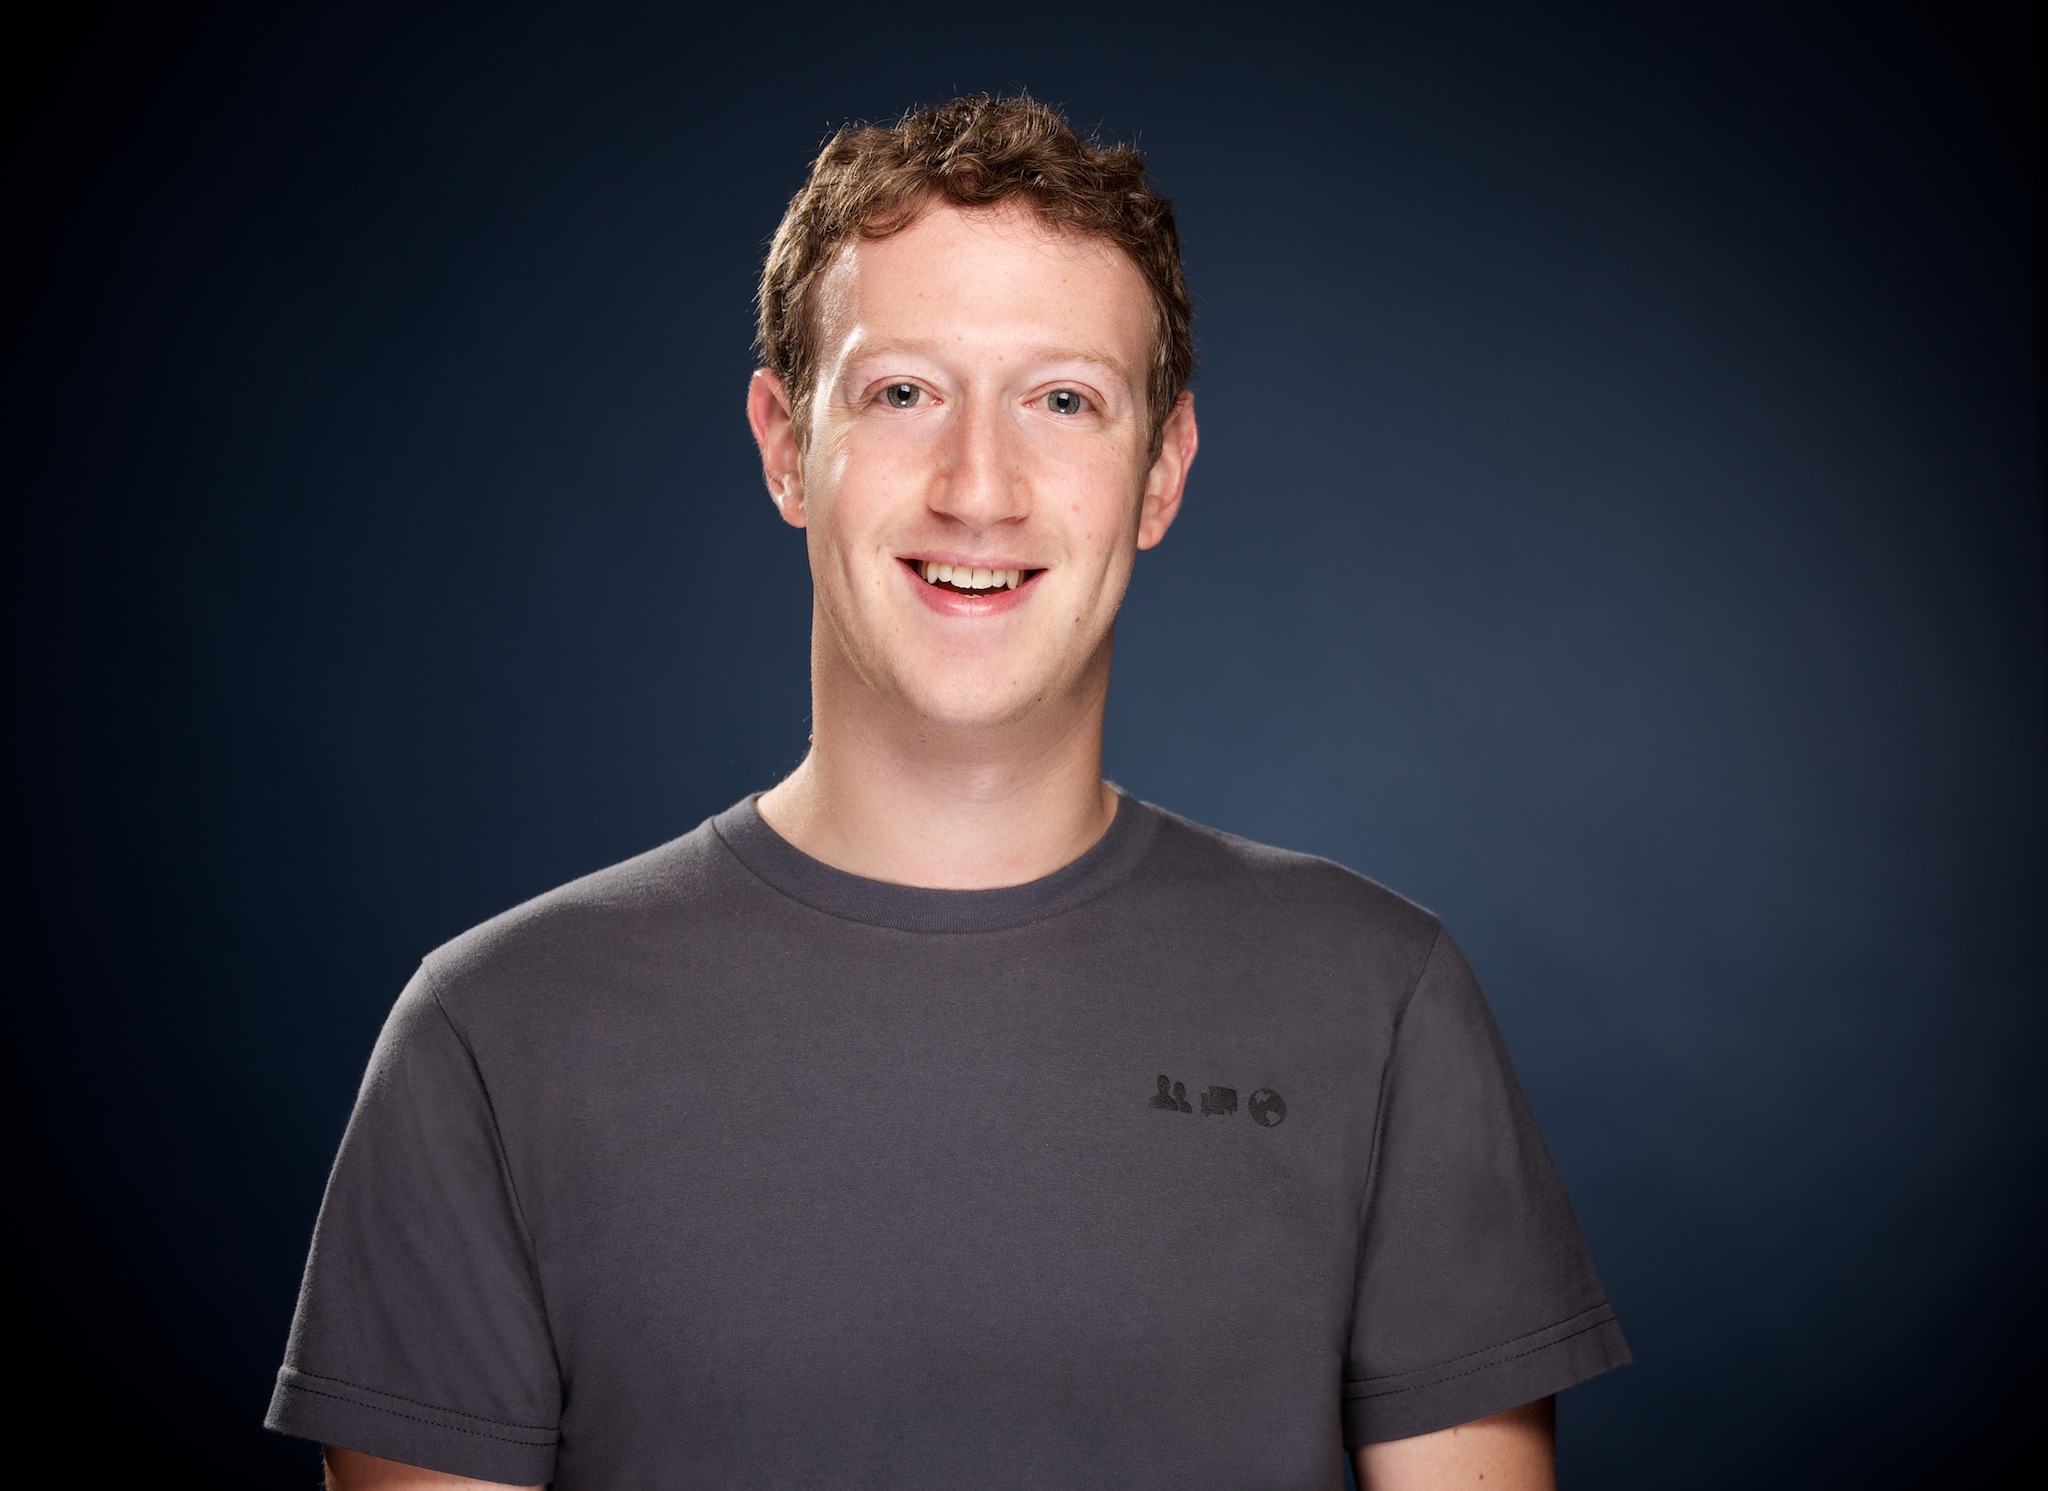 mark-zuckerberg-headshot.jpg